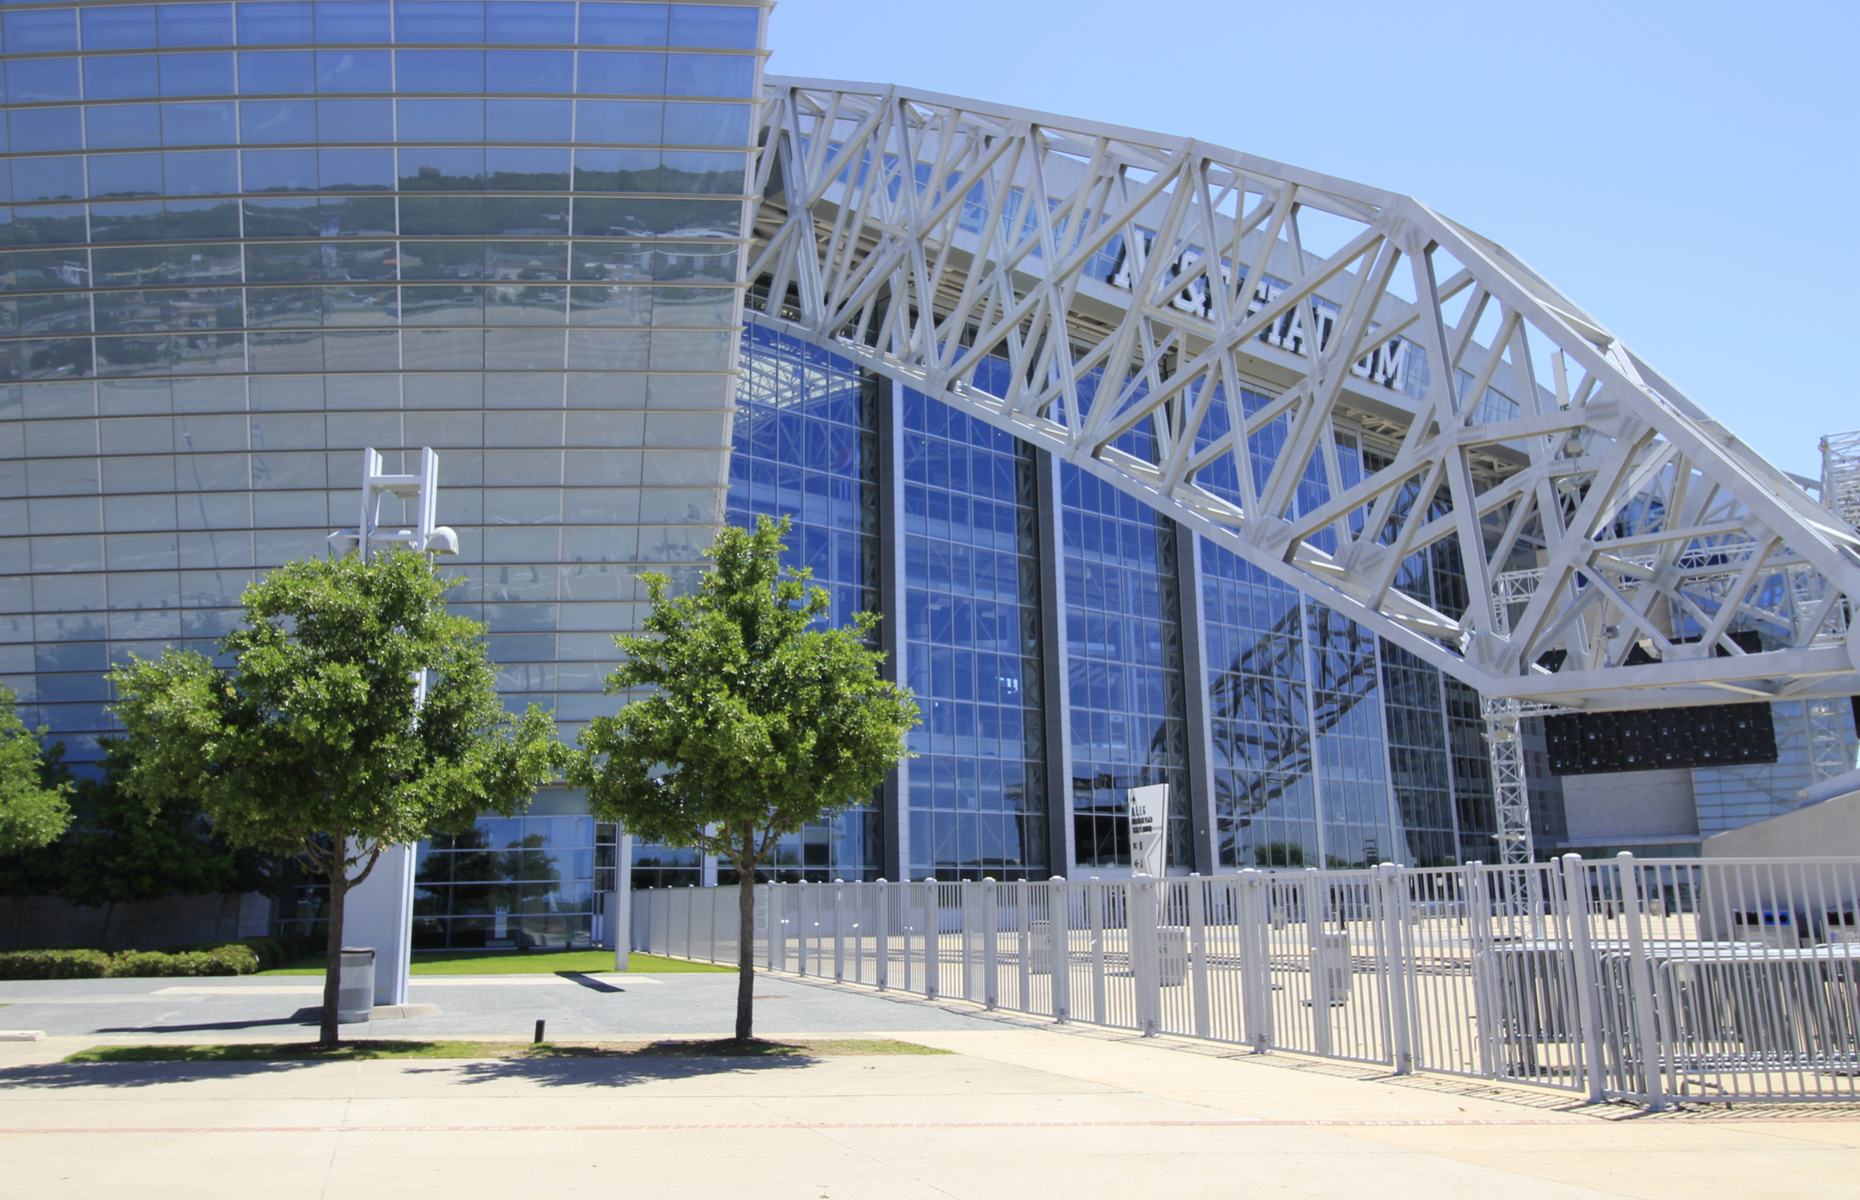 <p>Le stade AT&T (alias l’Étoile de la Mort, alias le Jerry Dome, et anciennement le stade des Cowboys) a reçu le Super Bowl en 2011. C’est le cinquième stade de la NFL en taille est aussi le plus grand stade en dôme au monde, et il est visible de l’autoroute, à 8 kilomètres de là.</p> <p>Même s’ils n’ont pas participé à un Super Bowl depuis 1996, les Cowboys de Dallas sont toujours la franchise la plus rentable de la ligue, en grande partie grâce à l’emplacement de première classe du stade et au statut de quatrième région métropolitaine à travers la nation.</p> <p>Cette équipe est à égalité avec les 49ers de San Francisco au deuxième rang du plus grand nombre de victoires au Super Bowl.</p>